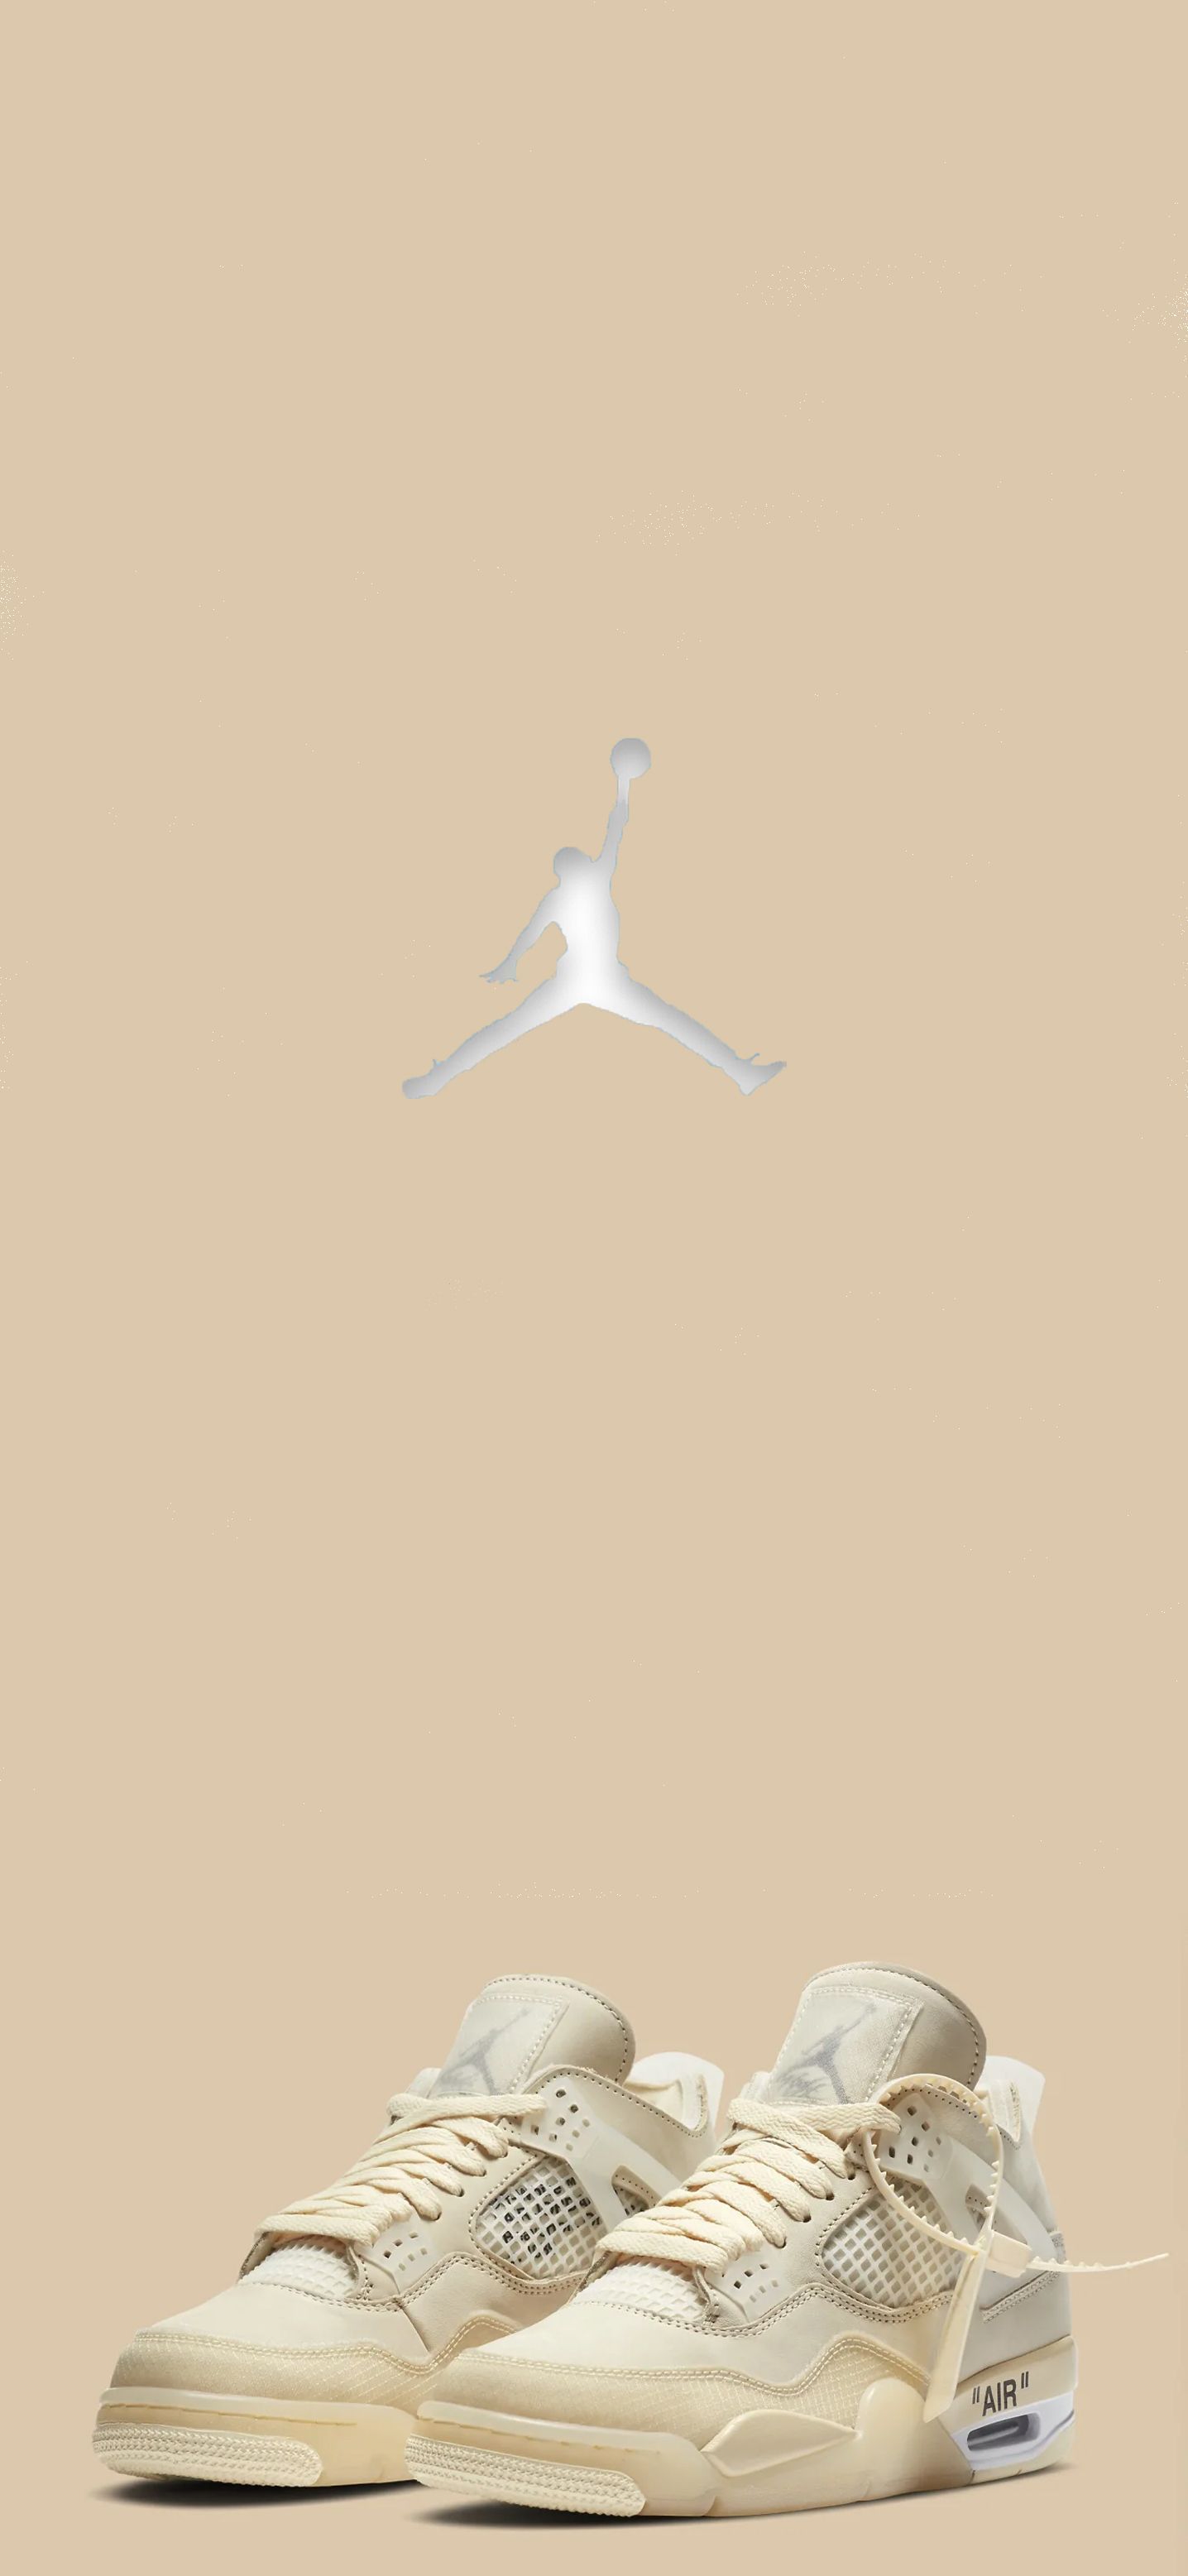 Air Jordan 4 (Off White). Sneakers Wallpaper, Jordan Shoes Wallpaper, Shoes Wallpaper